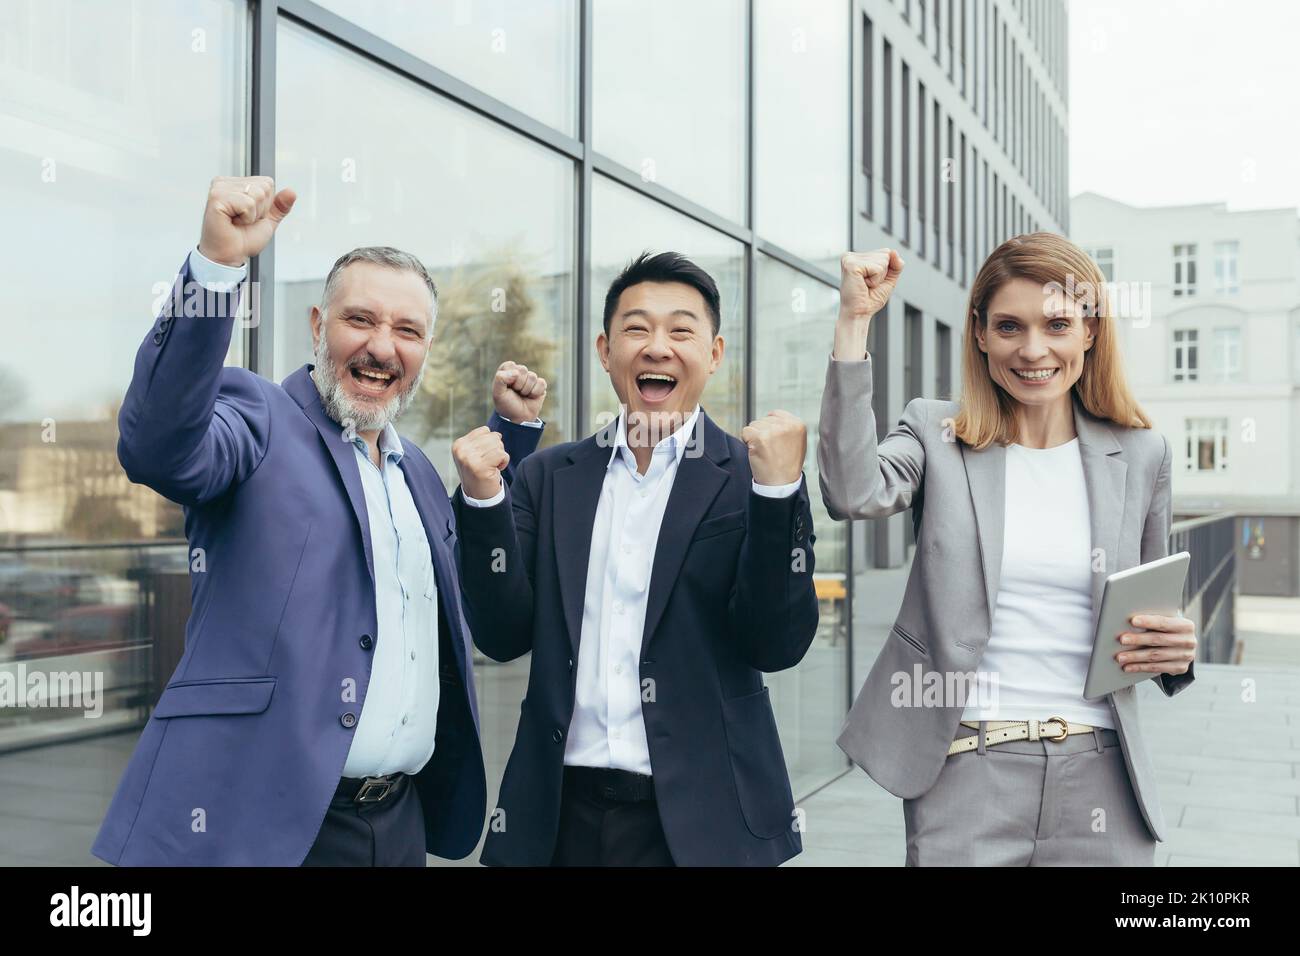 Interrassische Geschäftspartnerschaft. Drei Geschäftsleute feiern einen Sieg, einen erfolgreichen Deal. Ein älterer Mann, ein junger asiatischer Mann und eine junge Frau in Anzügen in der Nähe des Büros, lachen, zeigen mit ihren Händen ja. Stockfoto